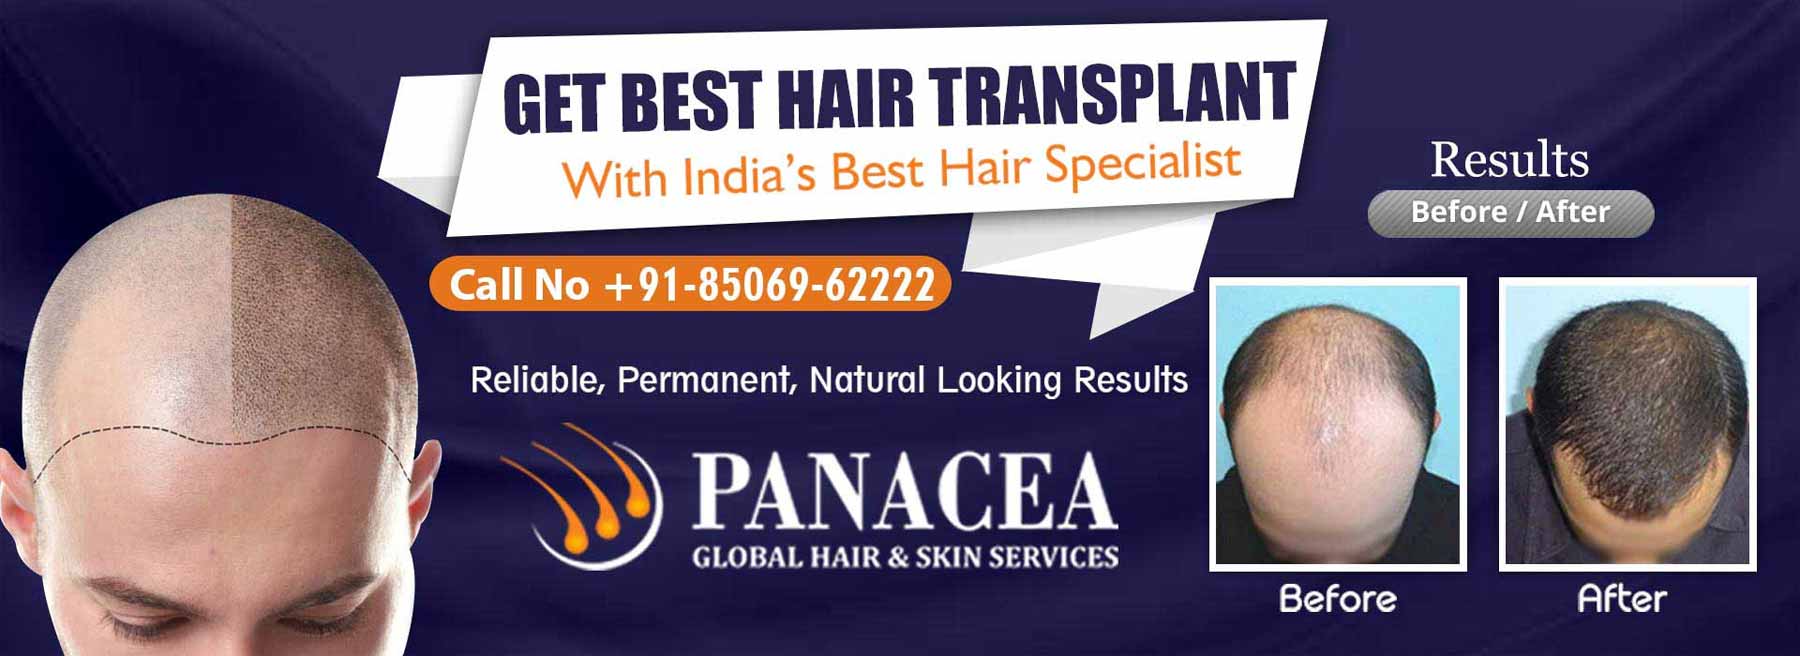 Get Best Hair Transplant - Panacea Global in Prashant Vihar